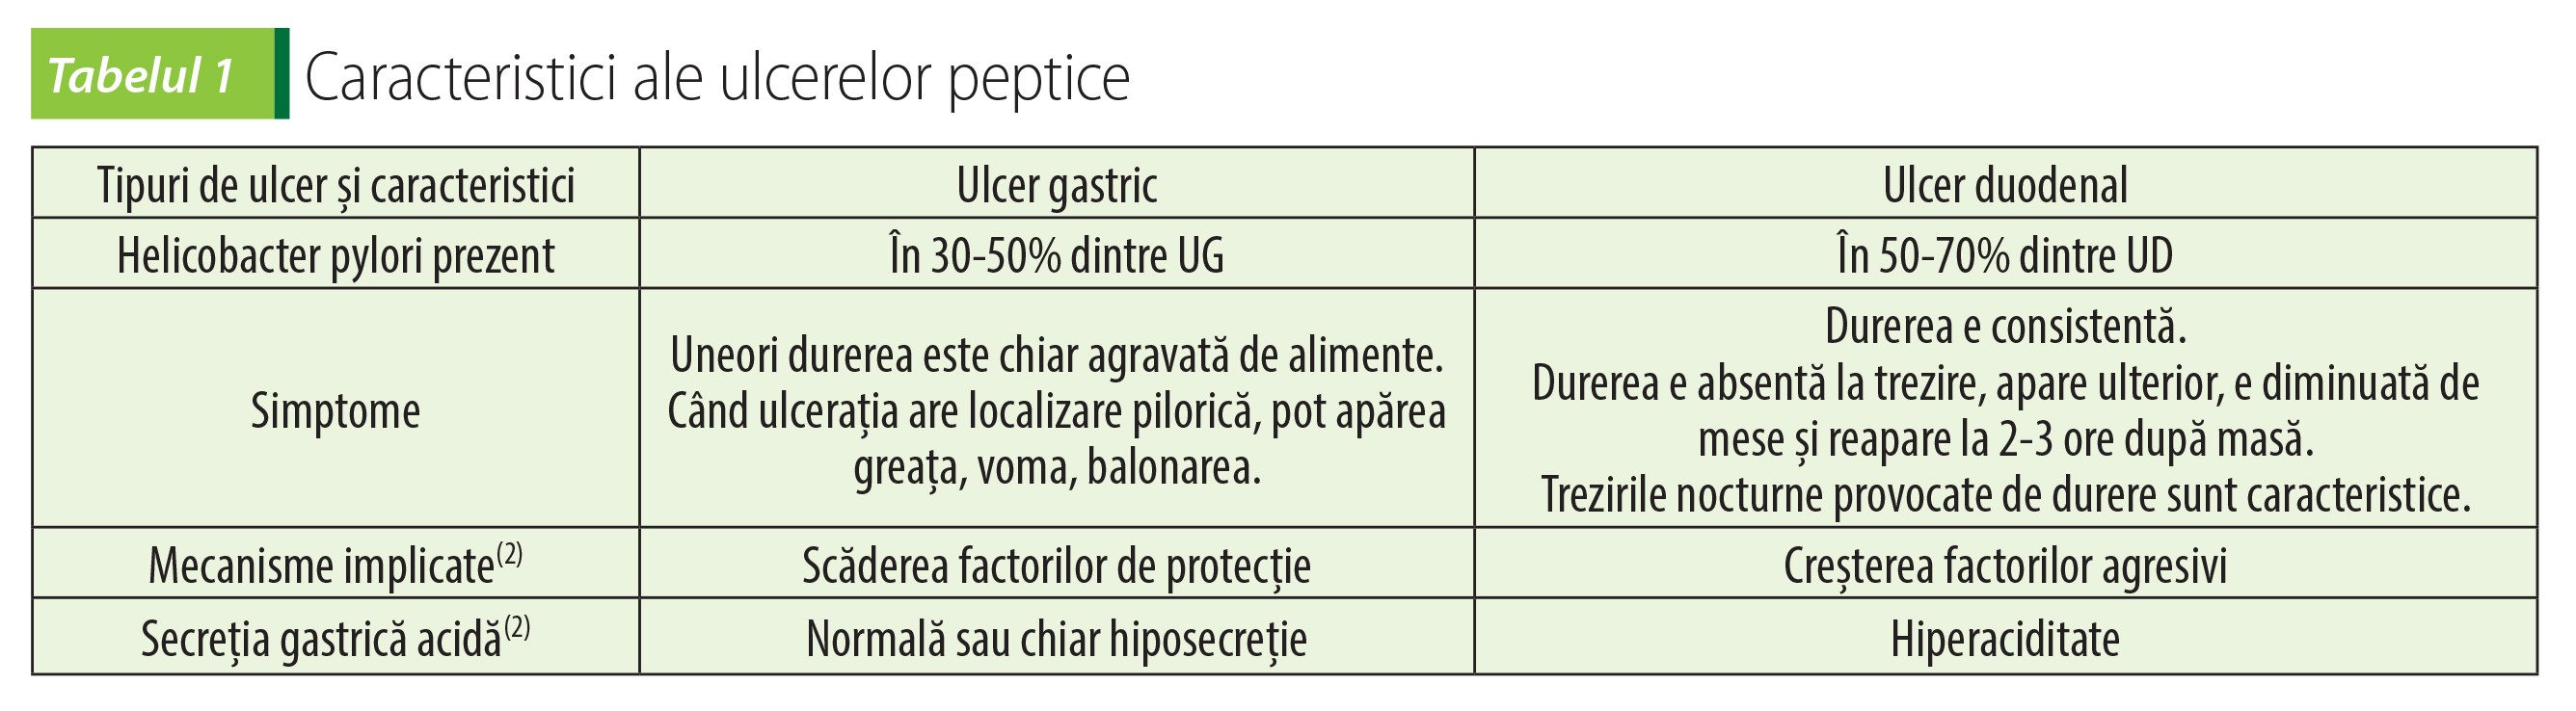 Tabelul 1 Caracteristici ale ulcerelor peptice